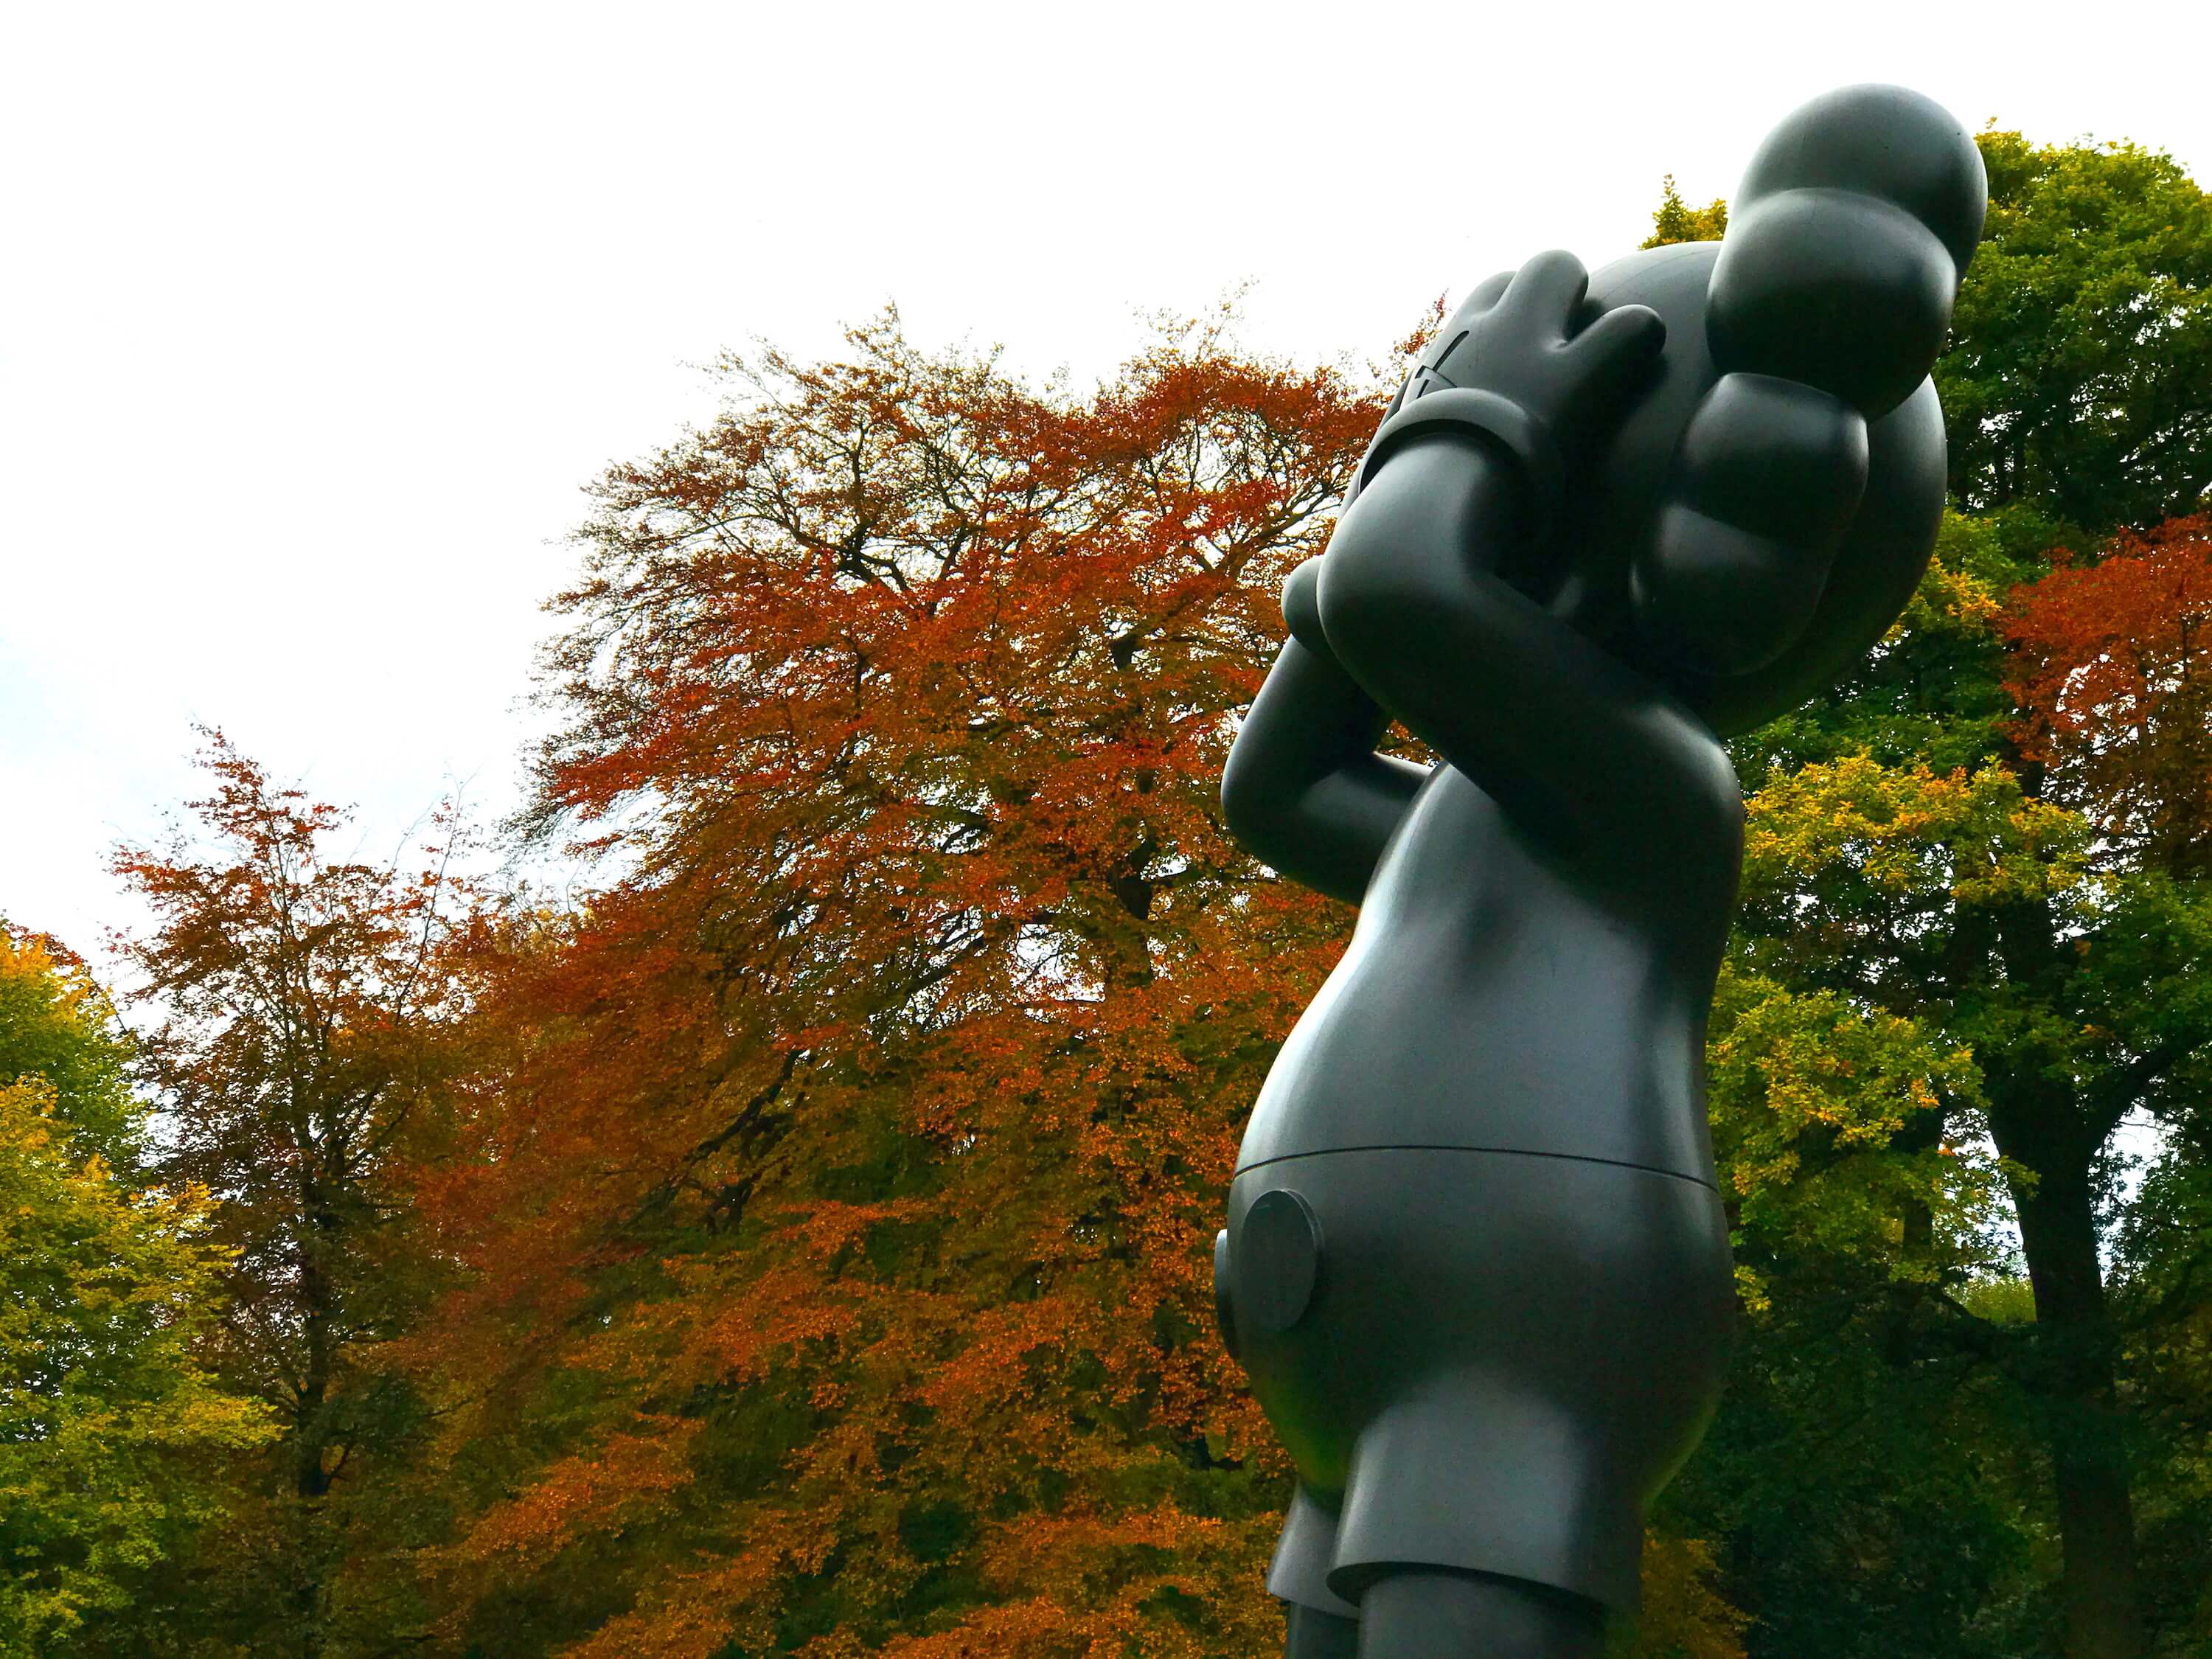 Kaws landscape art sculpture at a sculpture park in Autumn